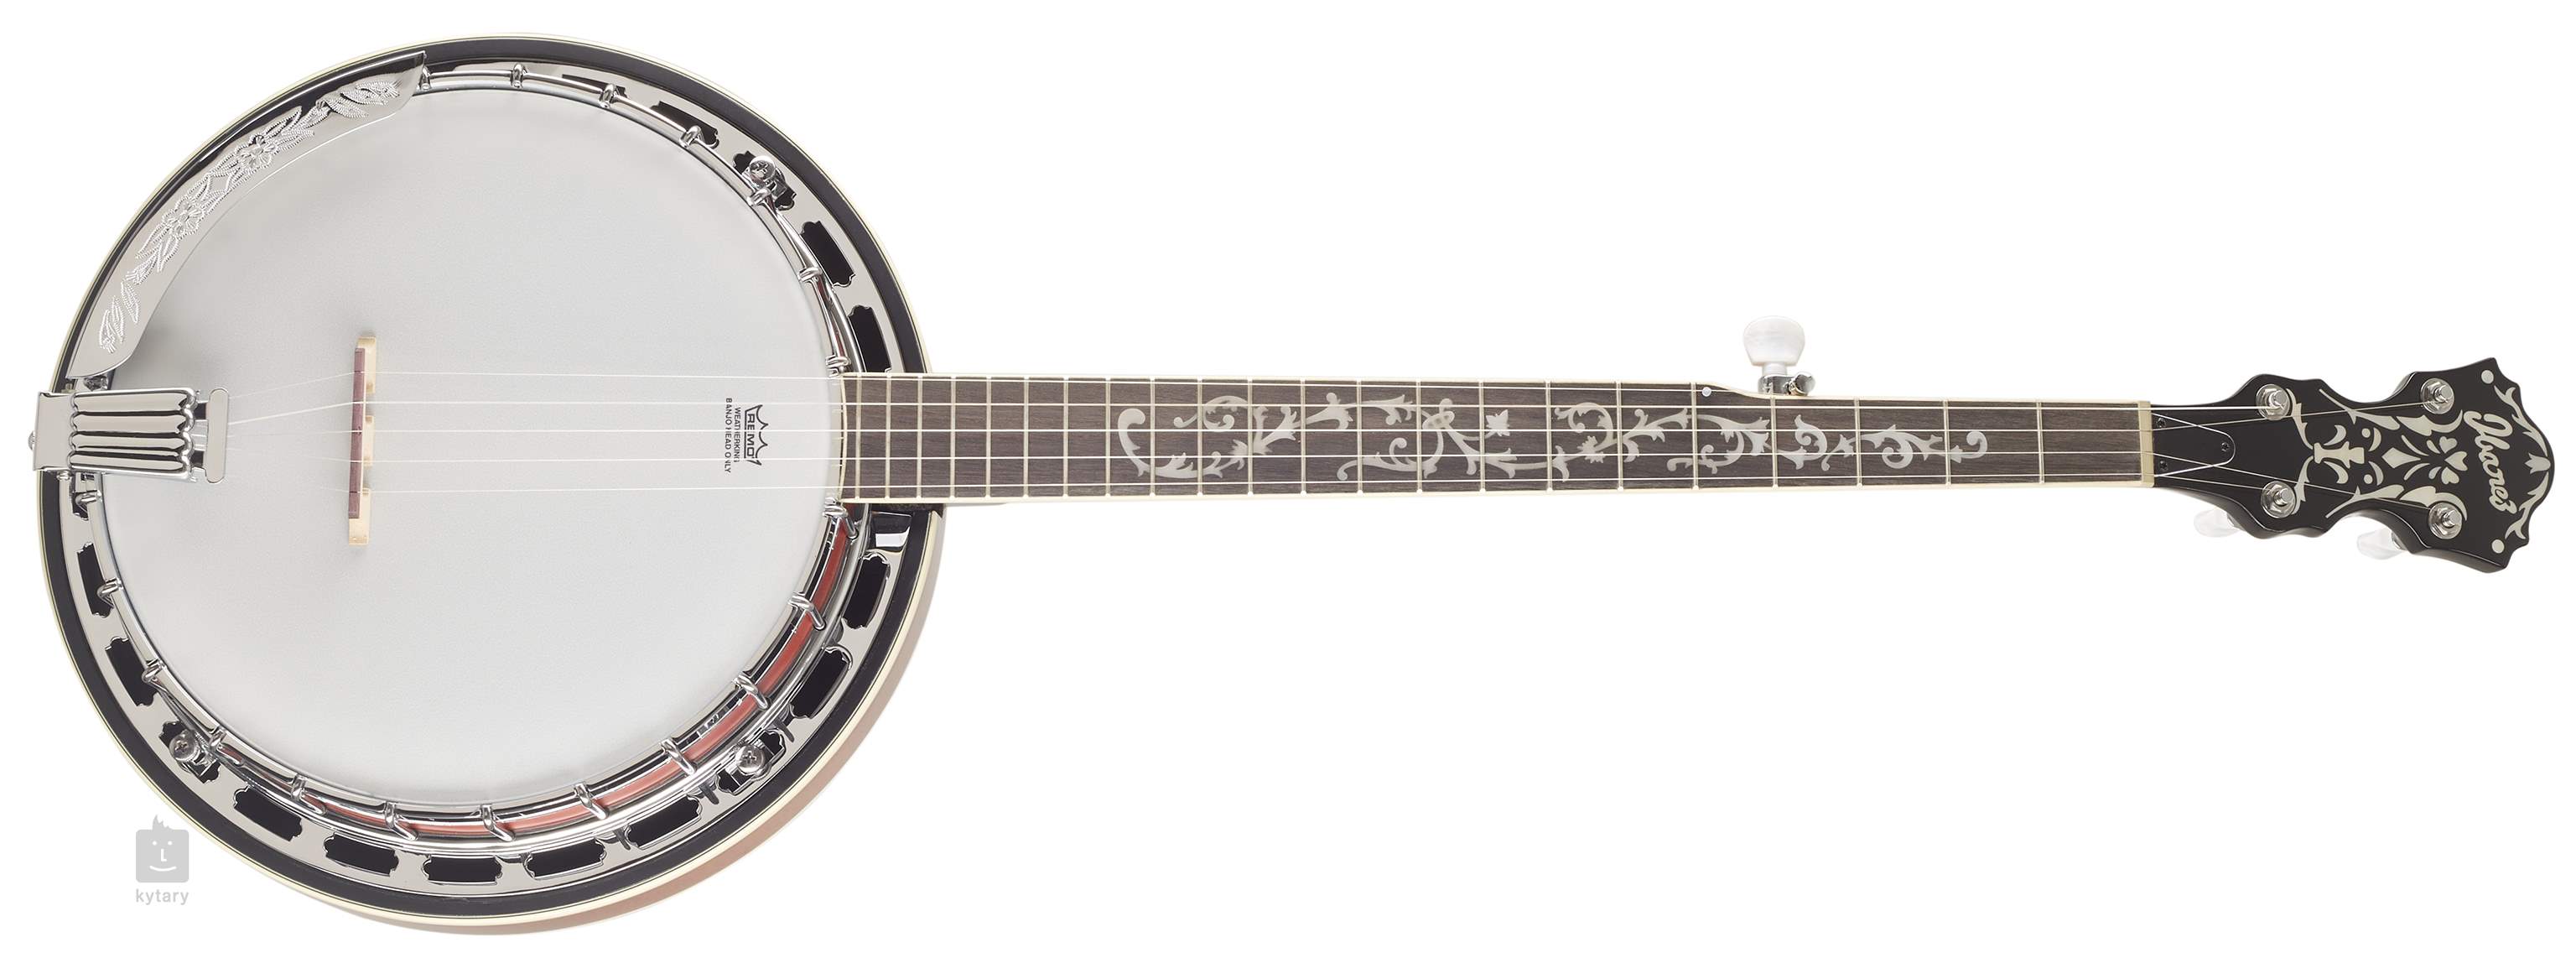 banjo.jpg  by Karnataka